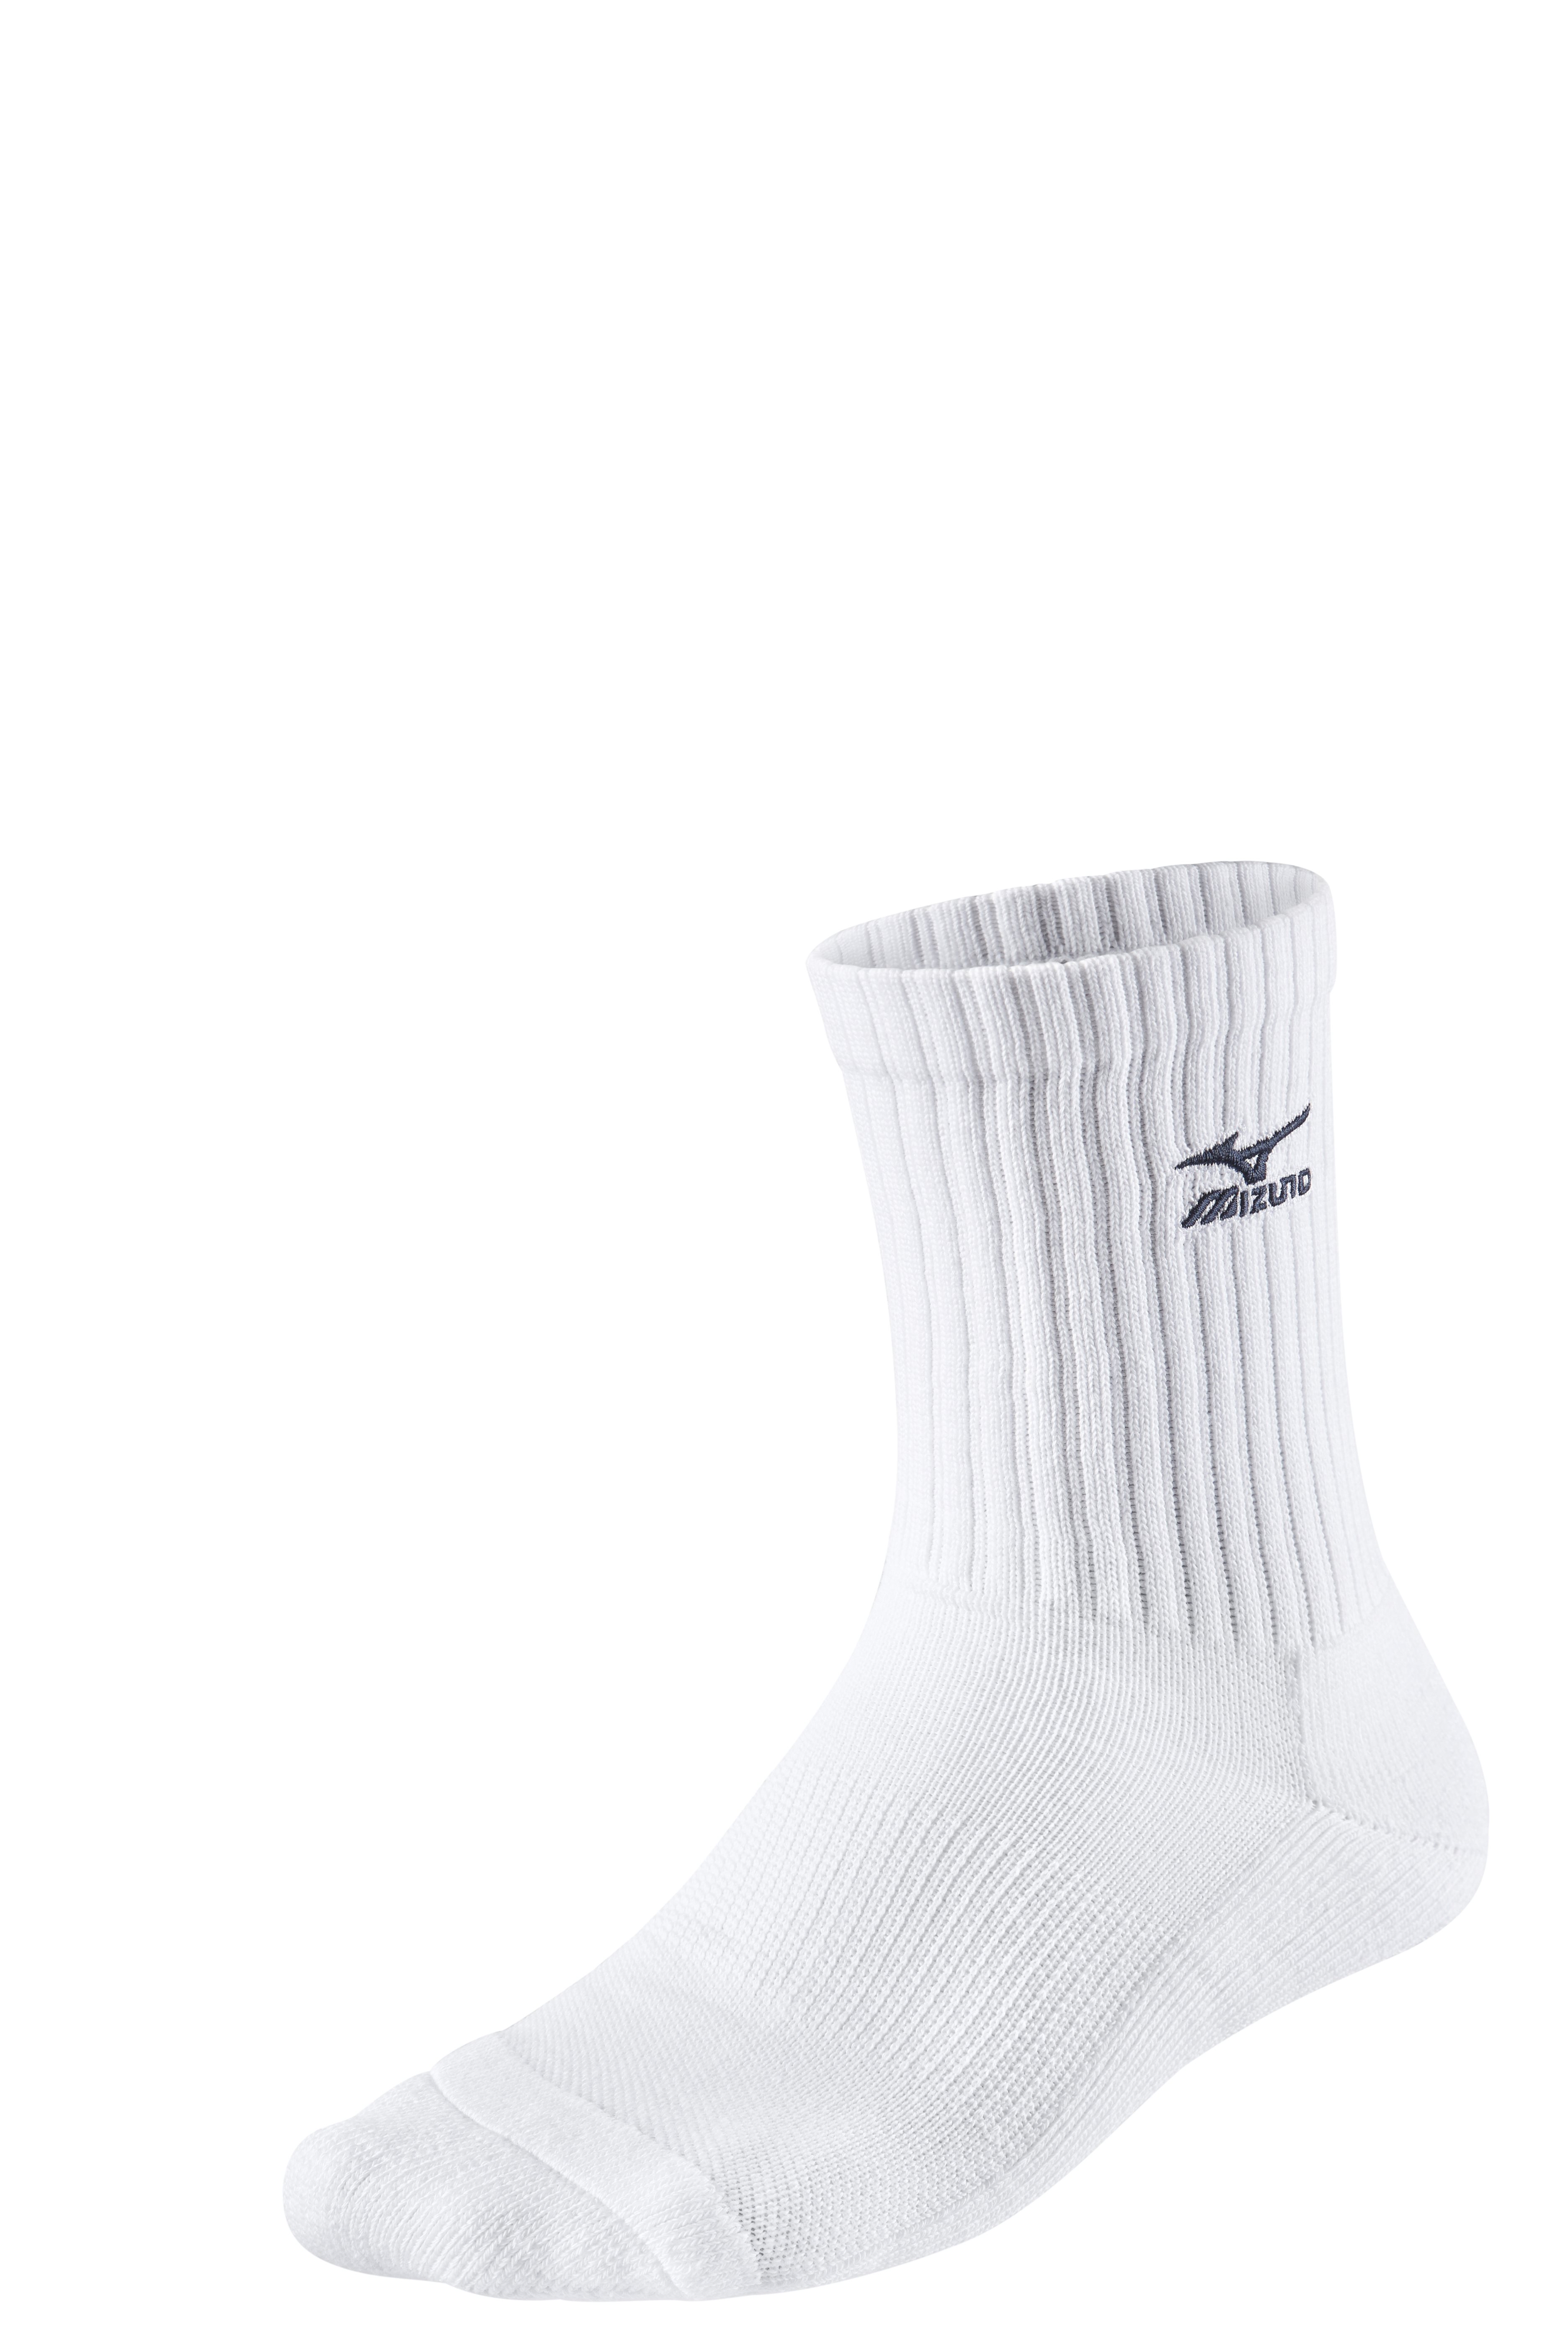 Mizuno Volley Socks Medium 67UU71571 M